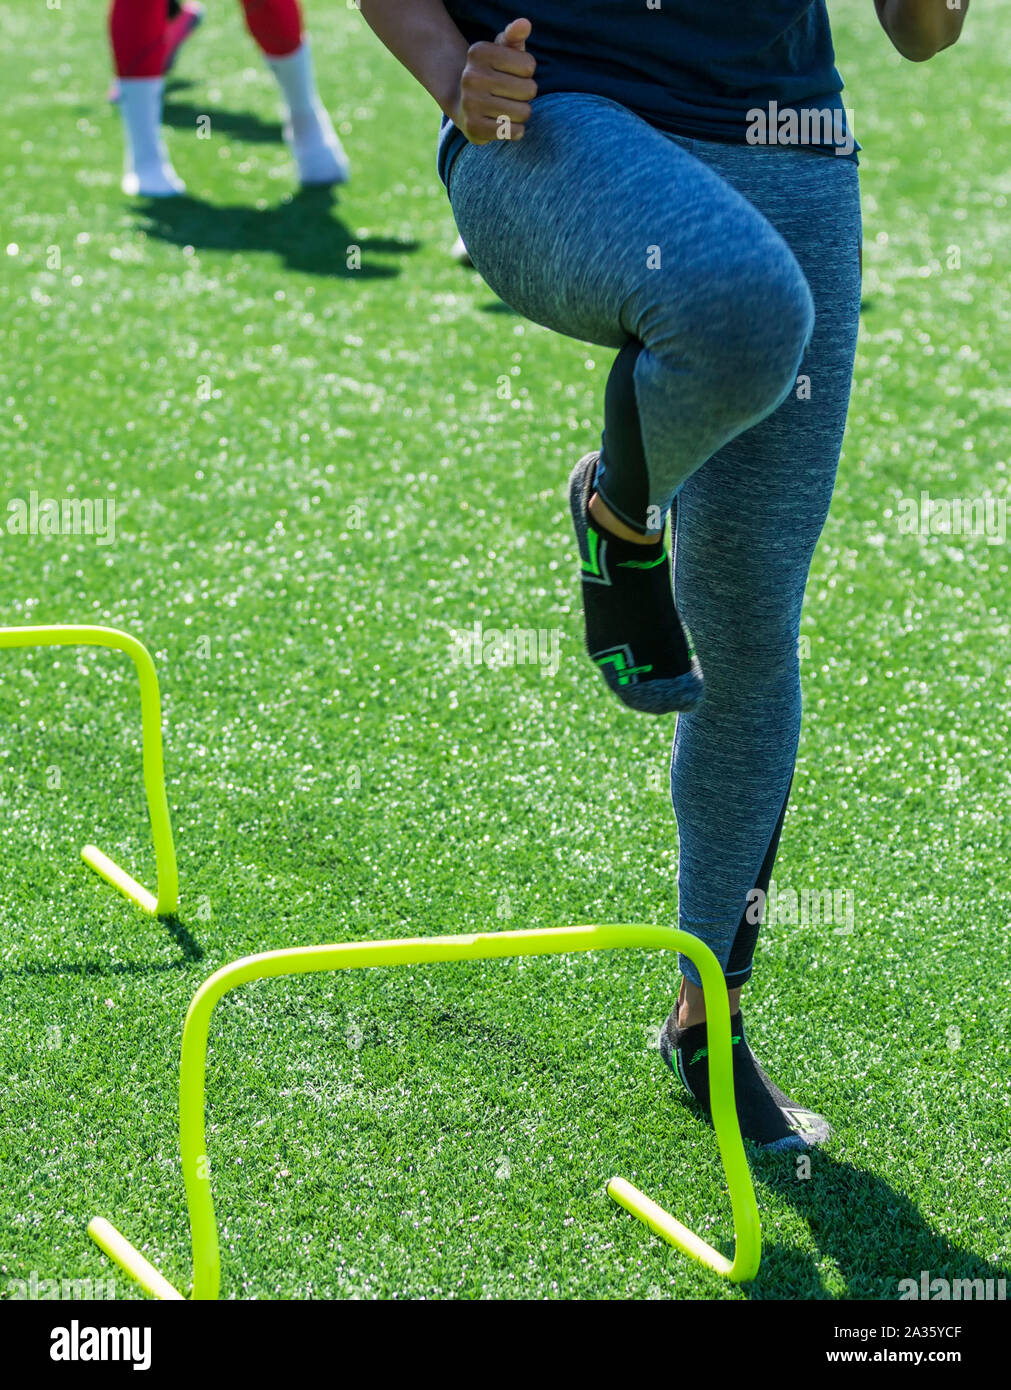 Un athlète féminin effectue des exercices d'exécution au mini haies tout en portant des chaussettes mais pas de chaussures sur un champ de gazon vert. Banque D'Images